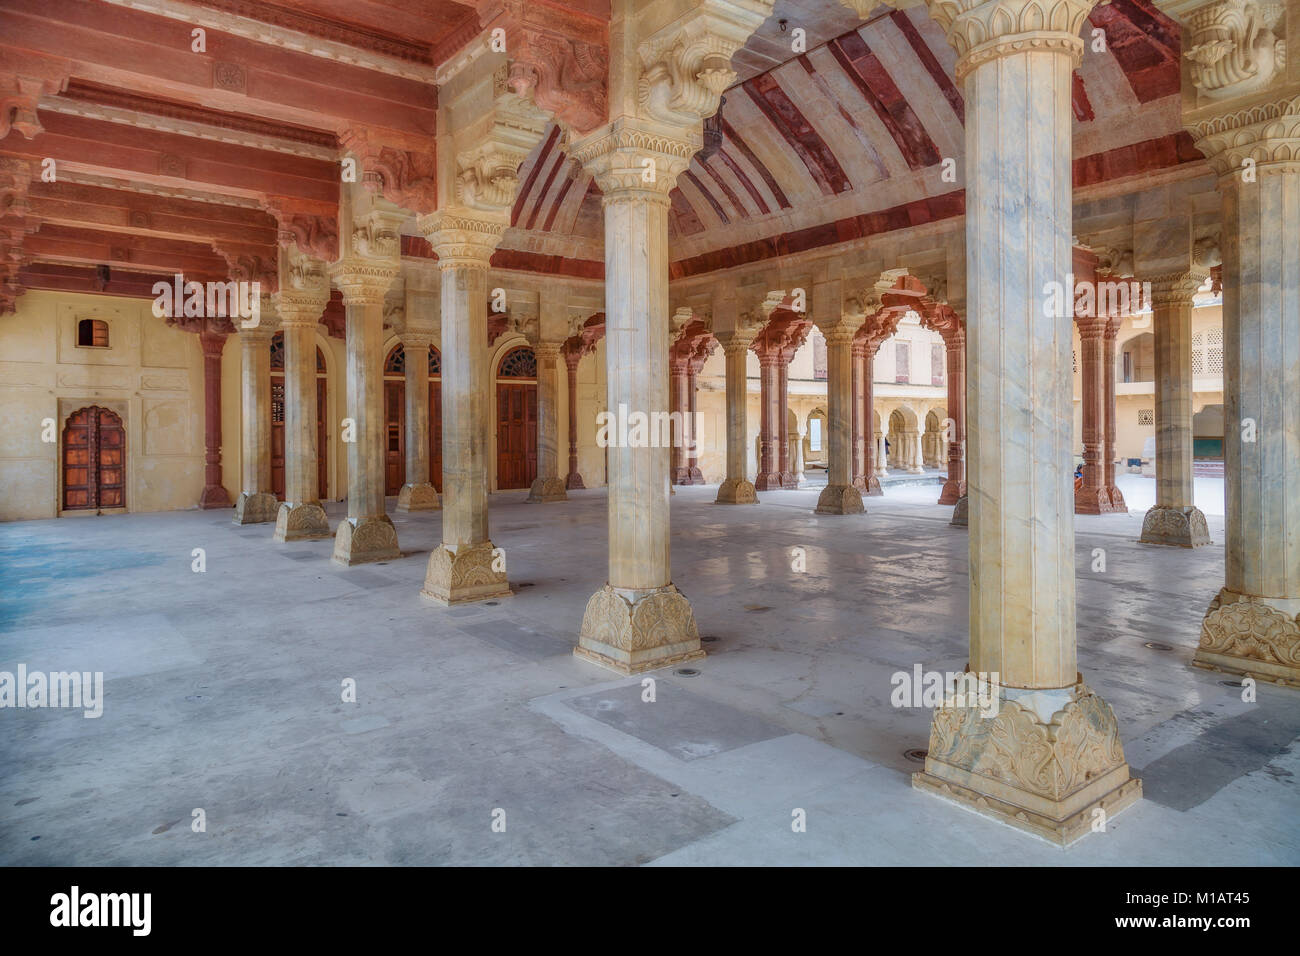 Fort Amber avec hall columned structure connue sous le Diwan-i-Aam le hall de l'auditoire à Jaipur, Rajasthan Inde. Banque D'Images